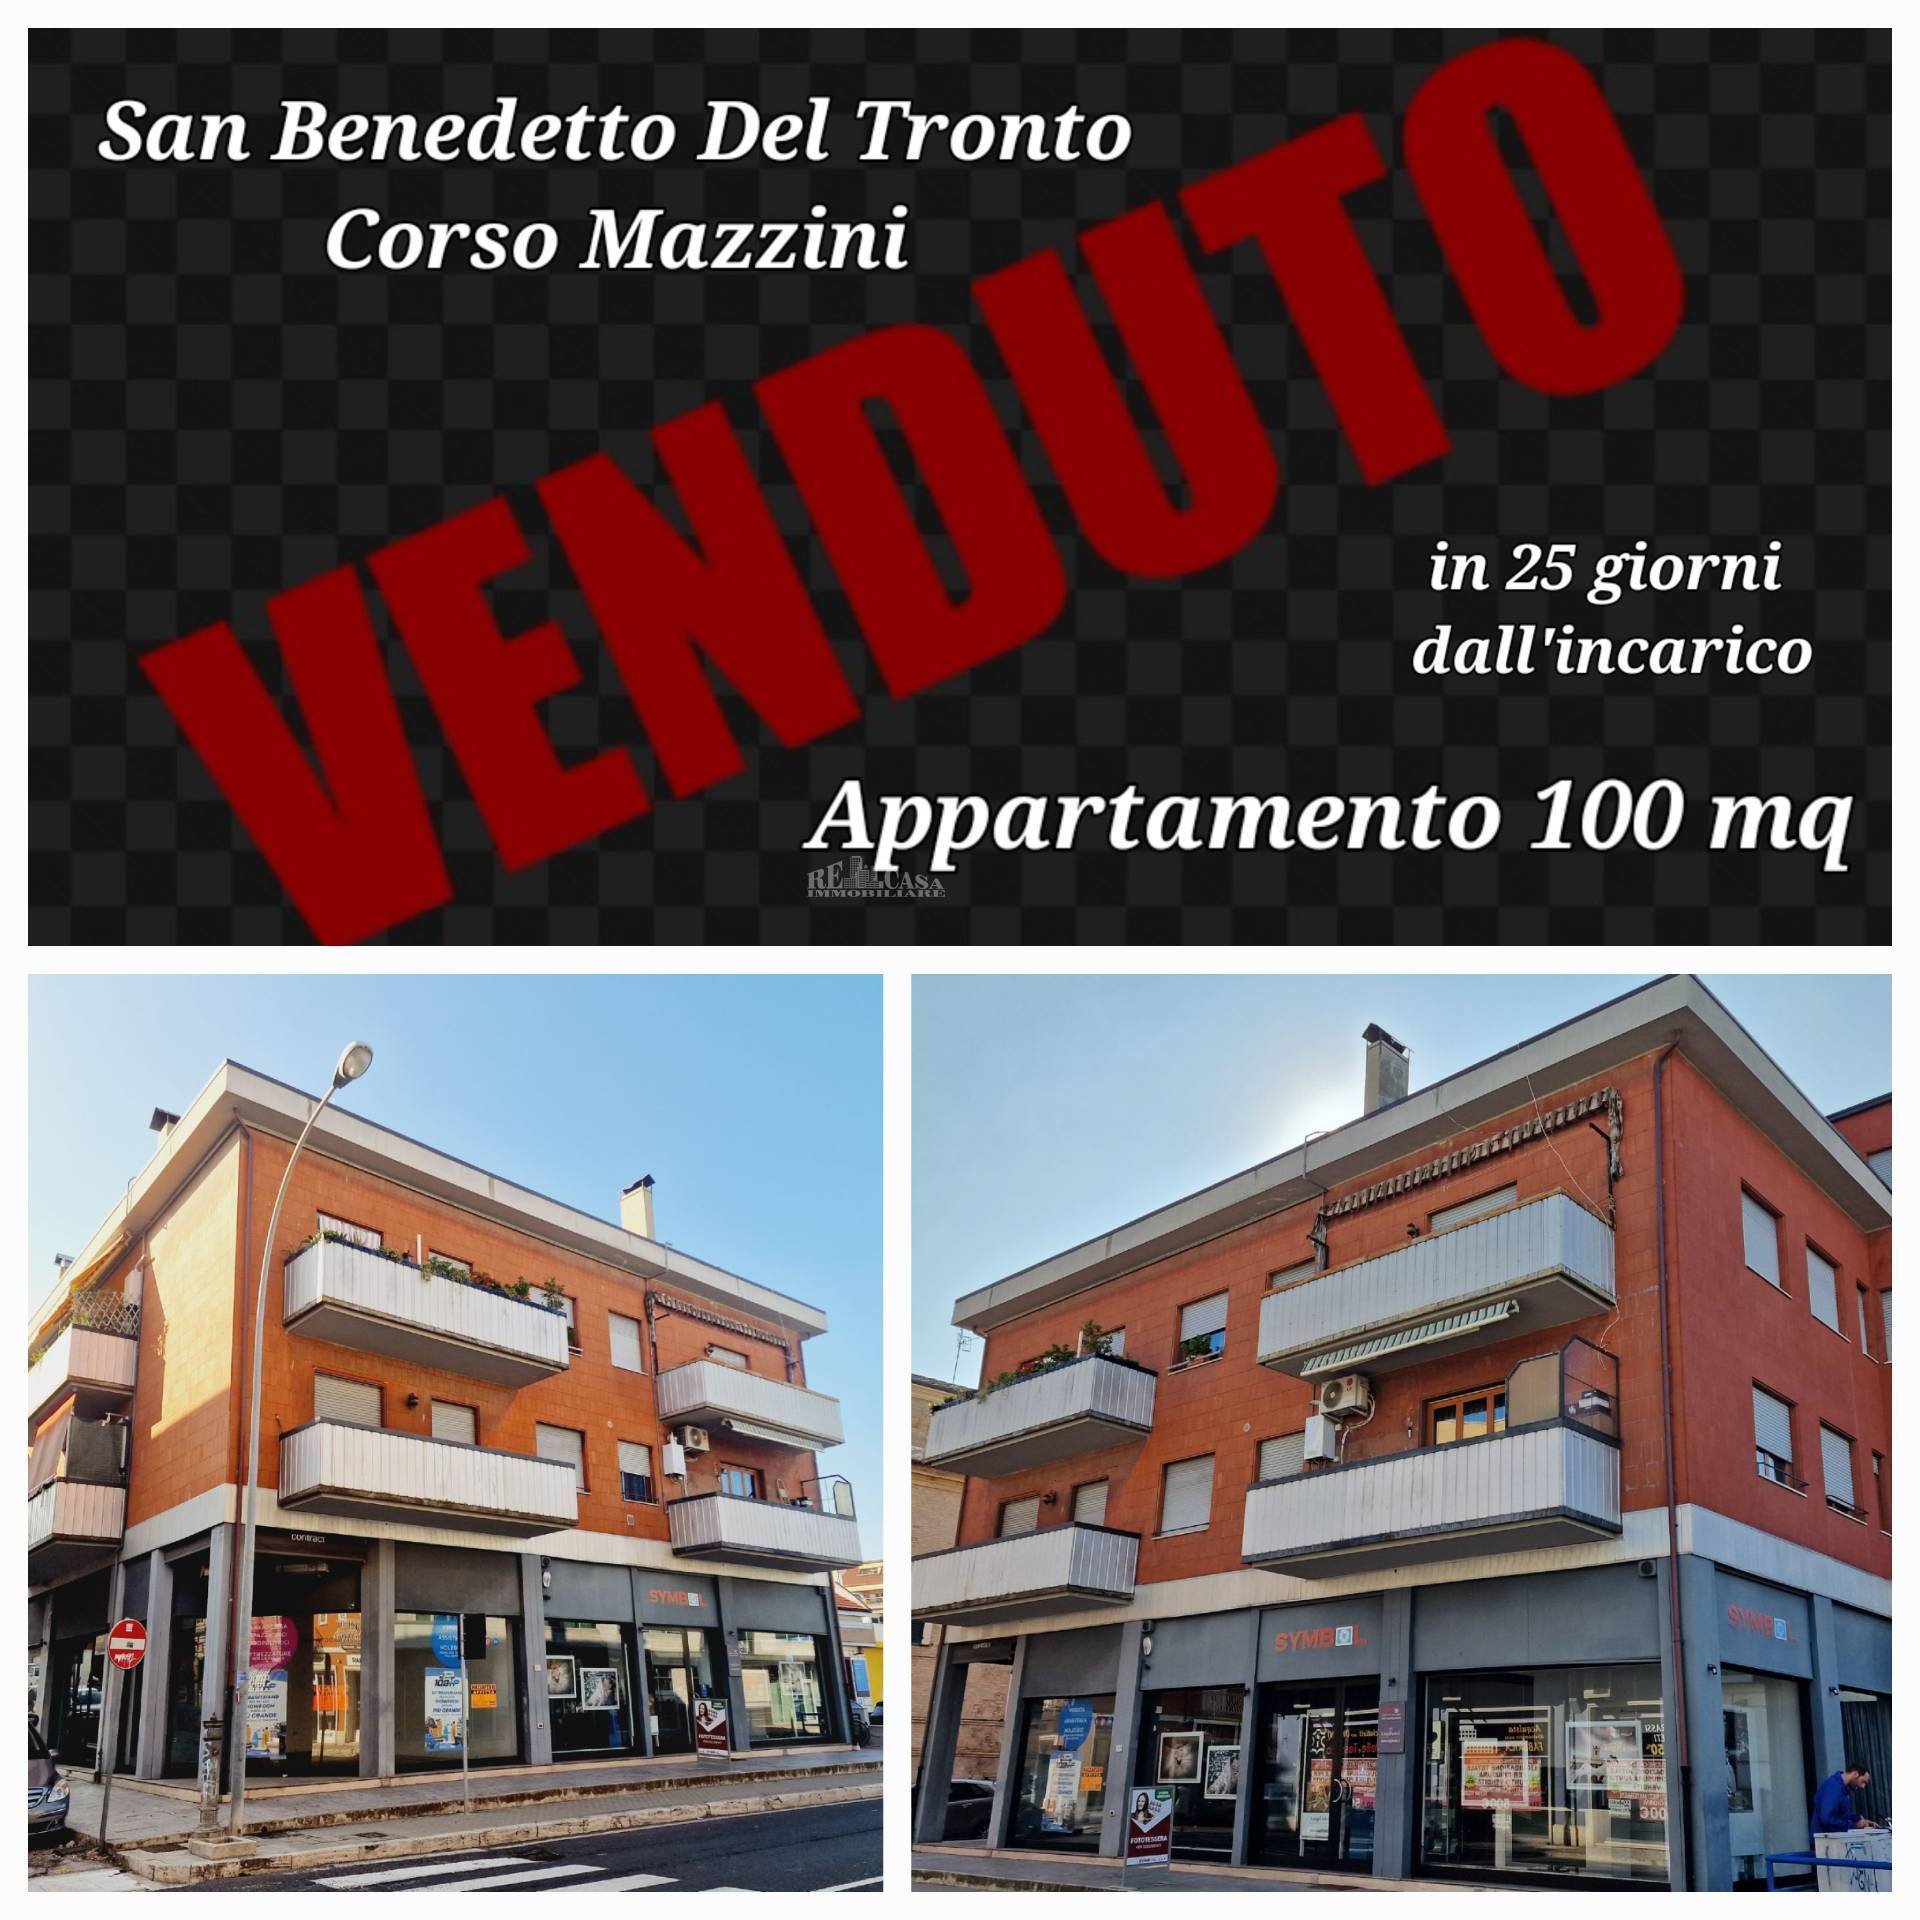 Quadrilocale in vendita, San Benedetto del Tronto centrale (verso nord)